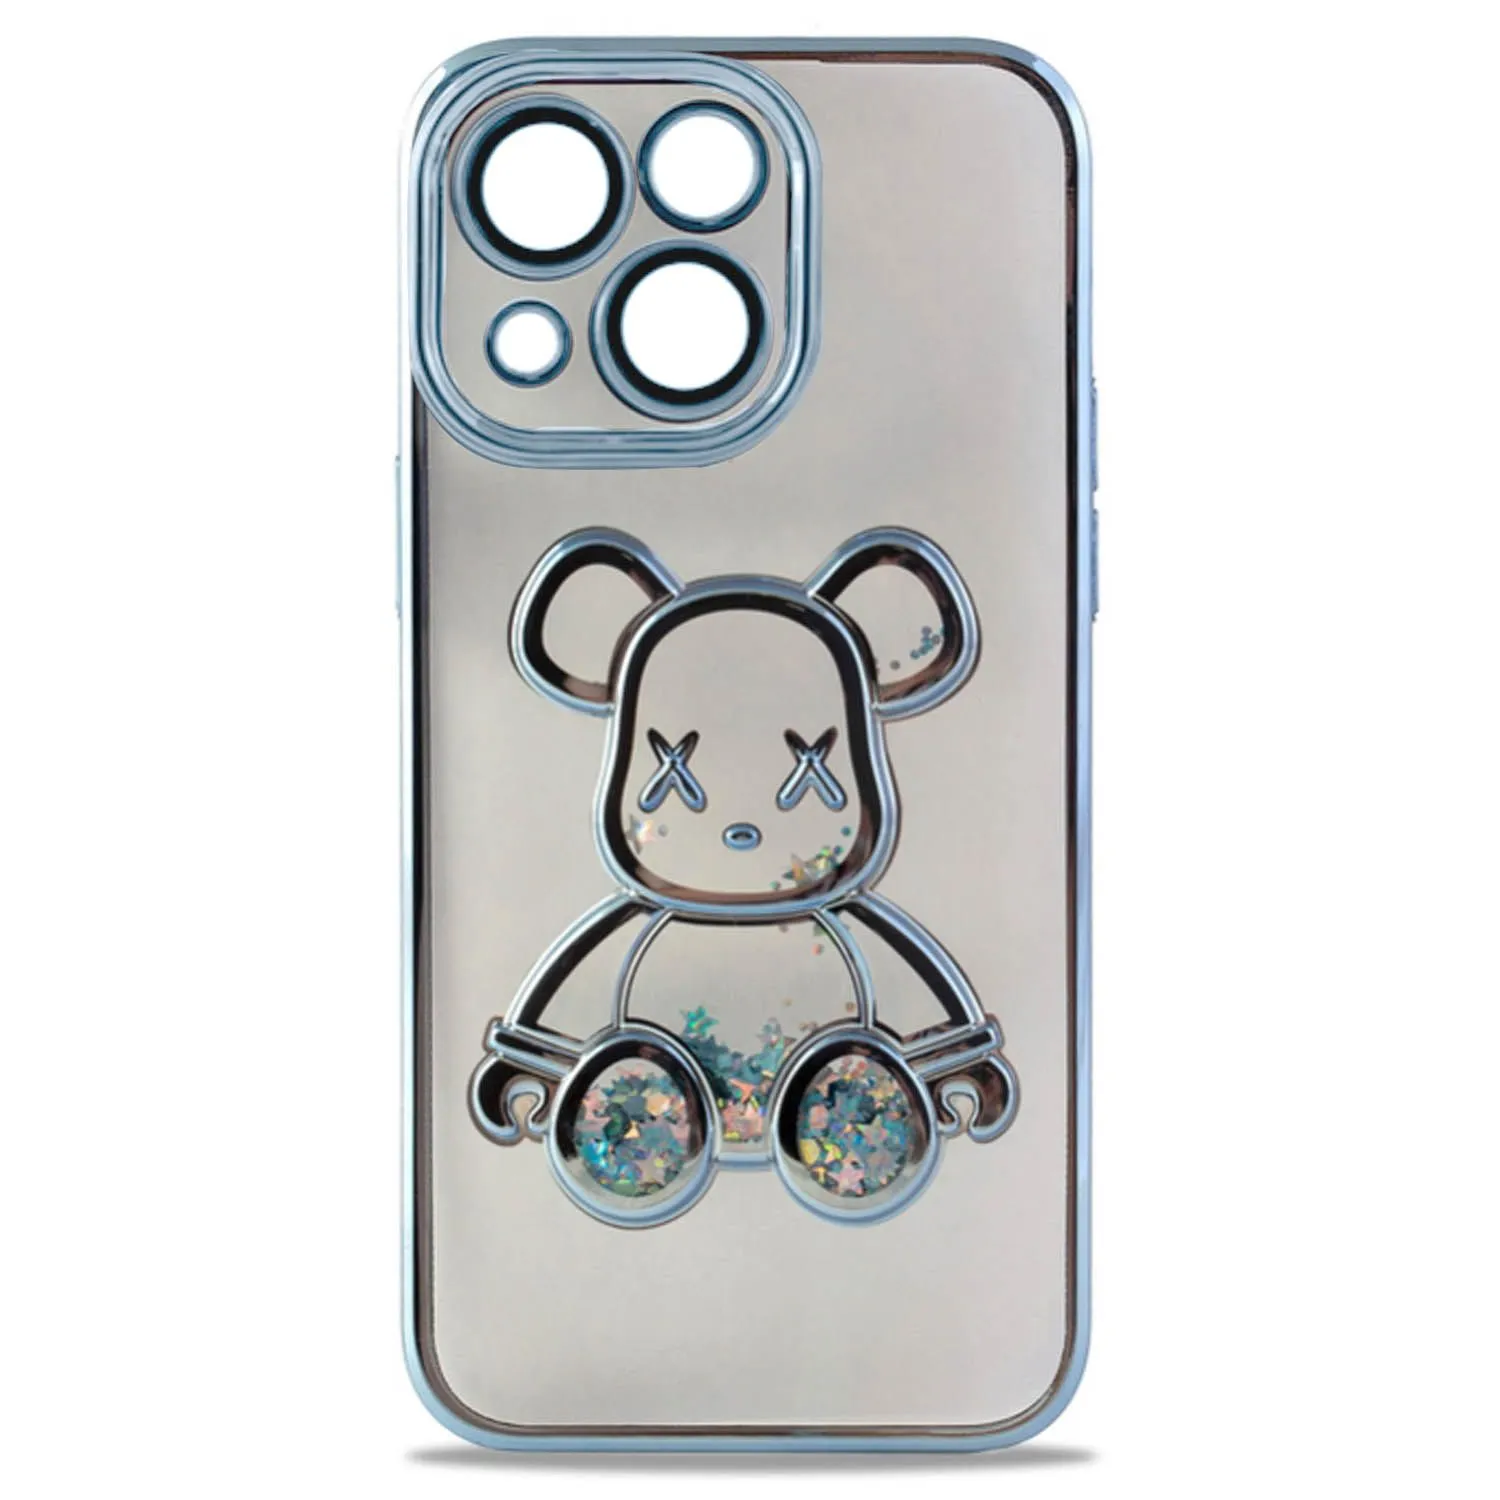 Чехол силиконовый с защитой камеры с принтом Bearbrick для Apple iPhone 14, iPhone 13 (голубой)